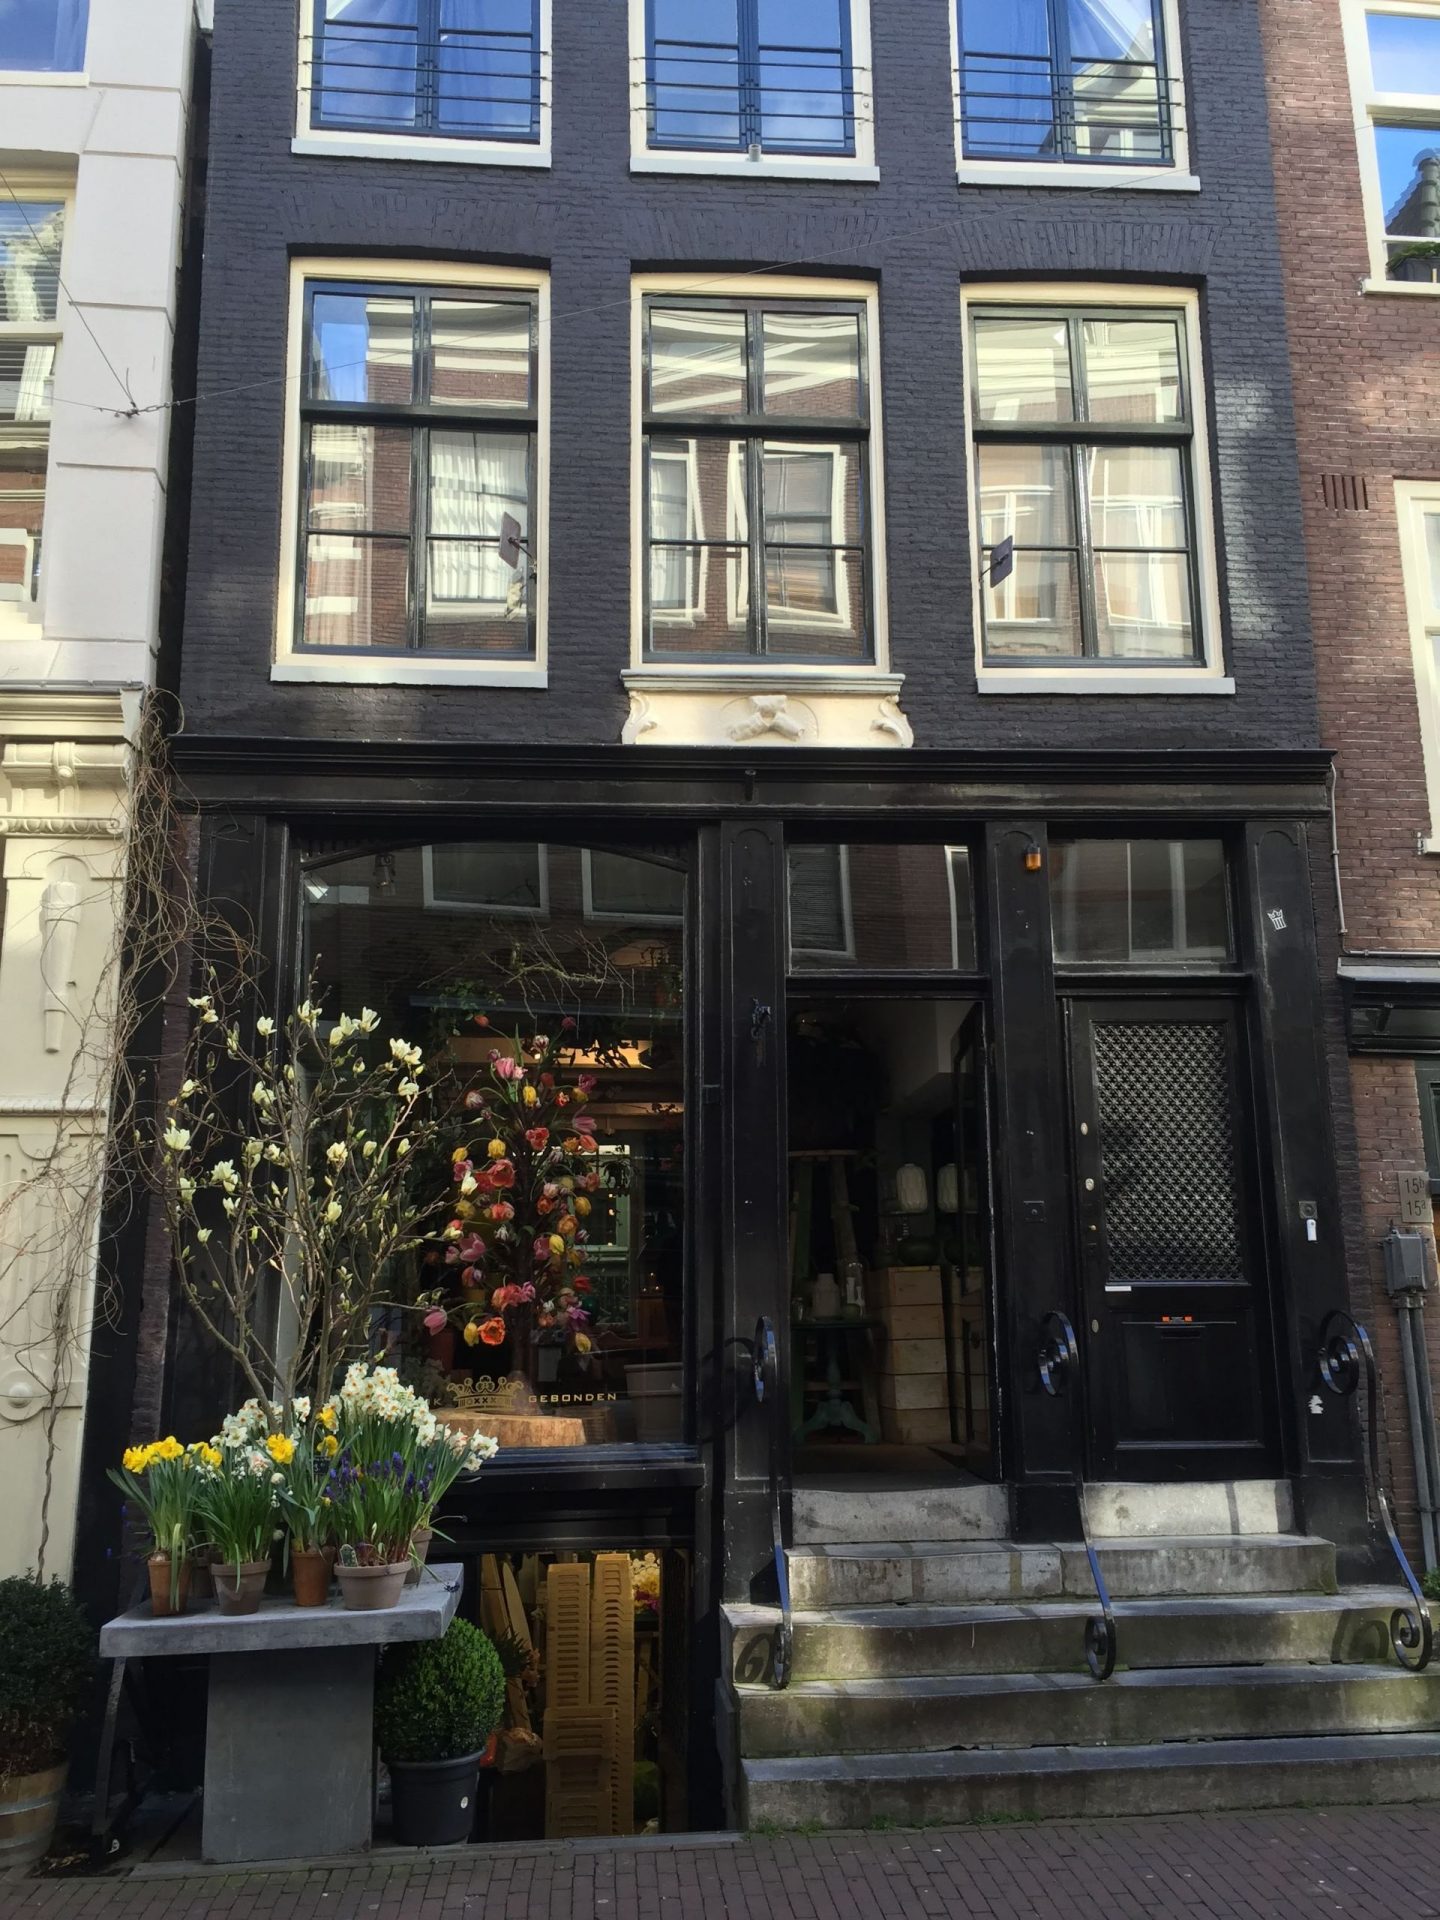 Shops in the Jordaan, Amsterdam